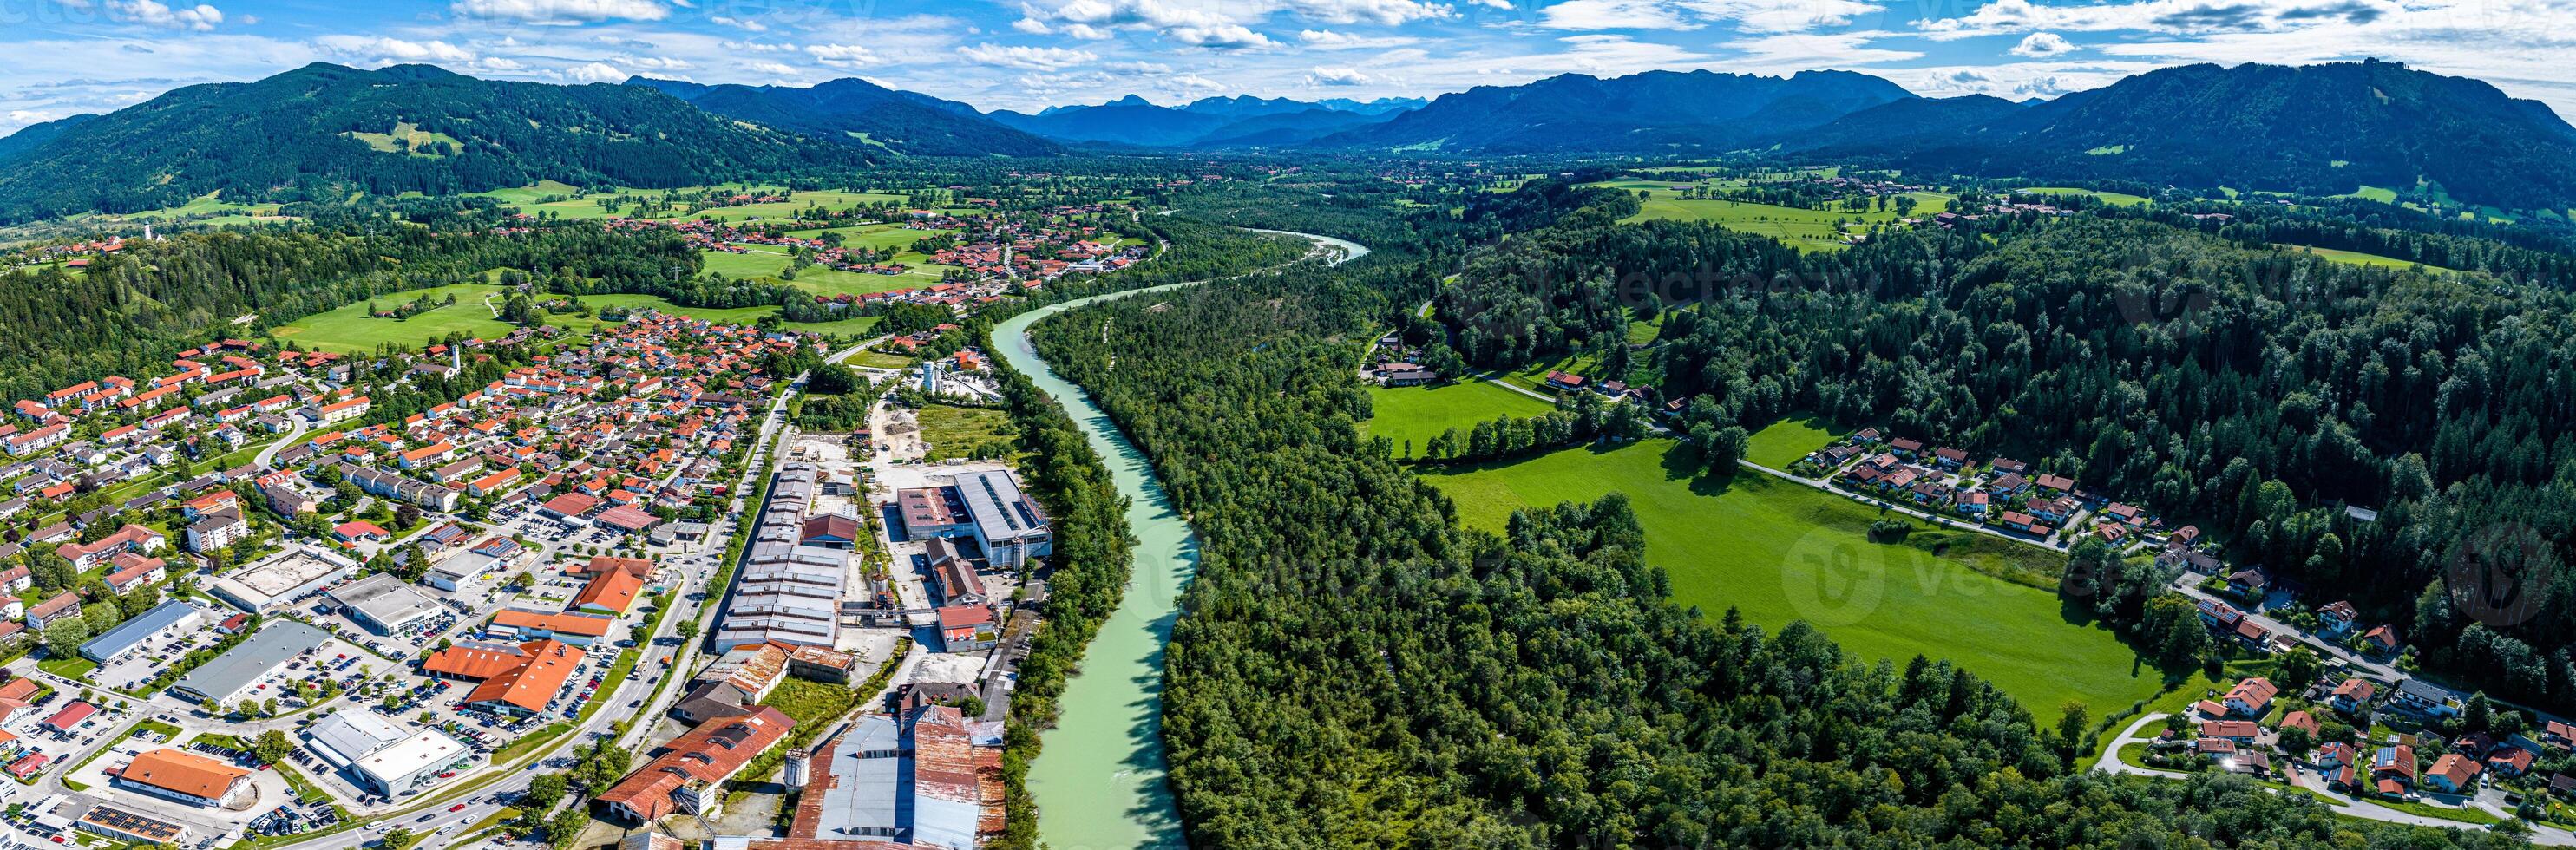 Schlecht Tölz isar Fluss. bayerisch Alpen. Moraltpark. Drohne Panorama foto